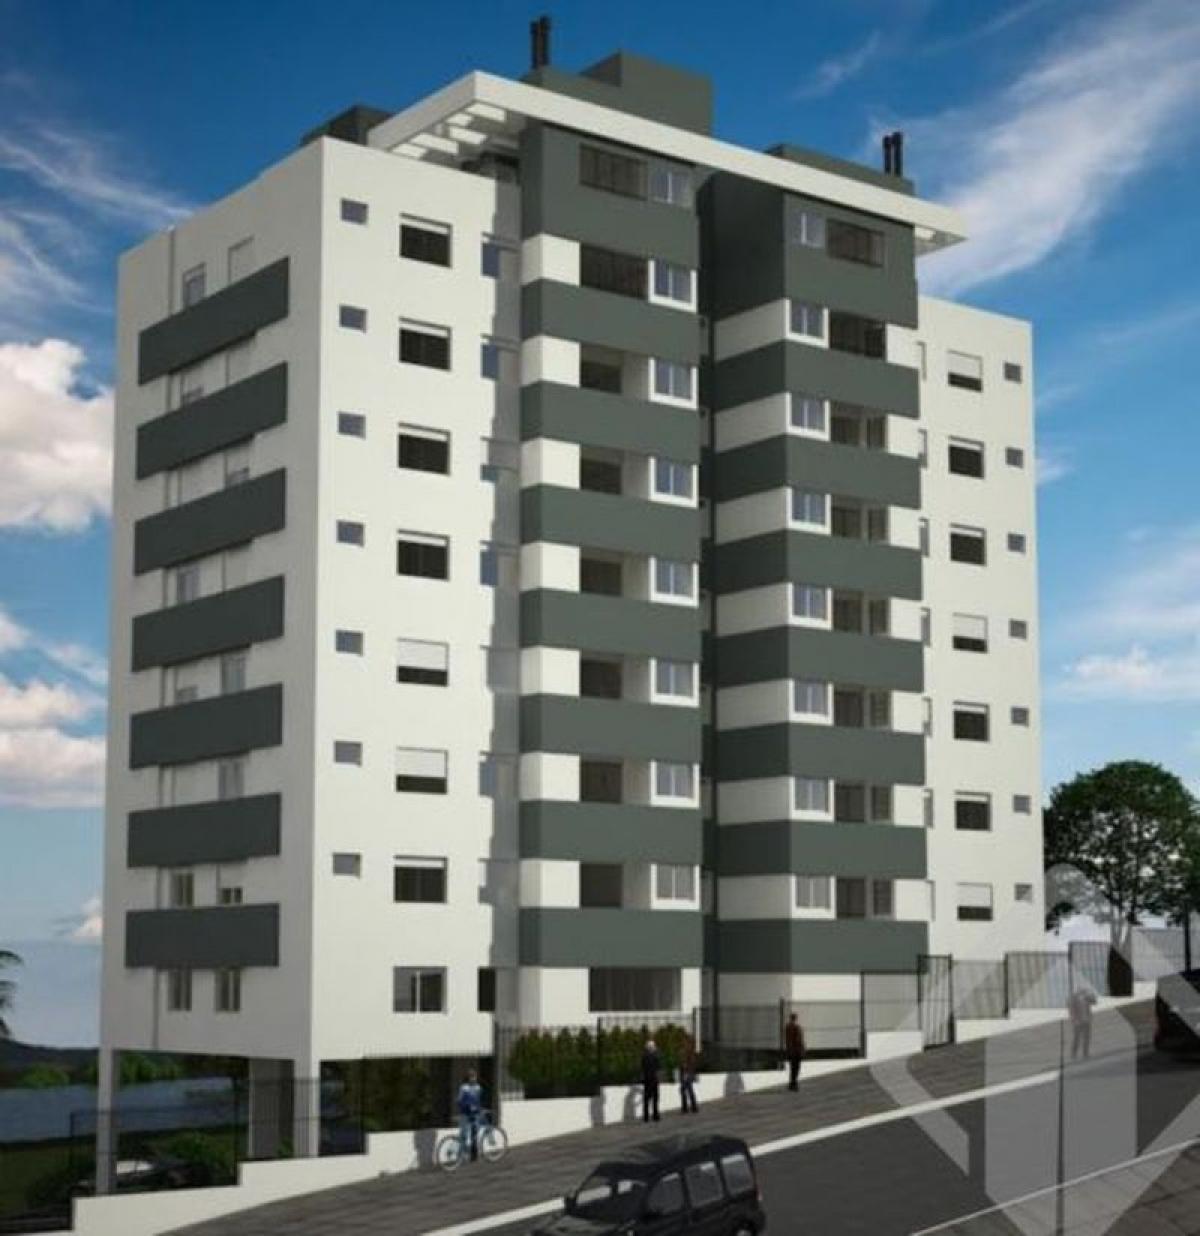 Picture of Apartment For Sale in Viamao, Rio Grande do Sul, Brazil